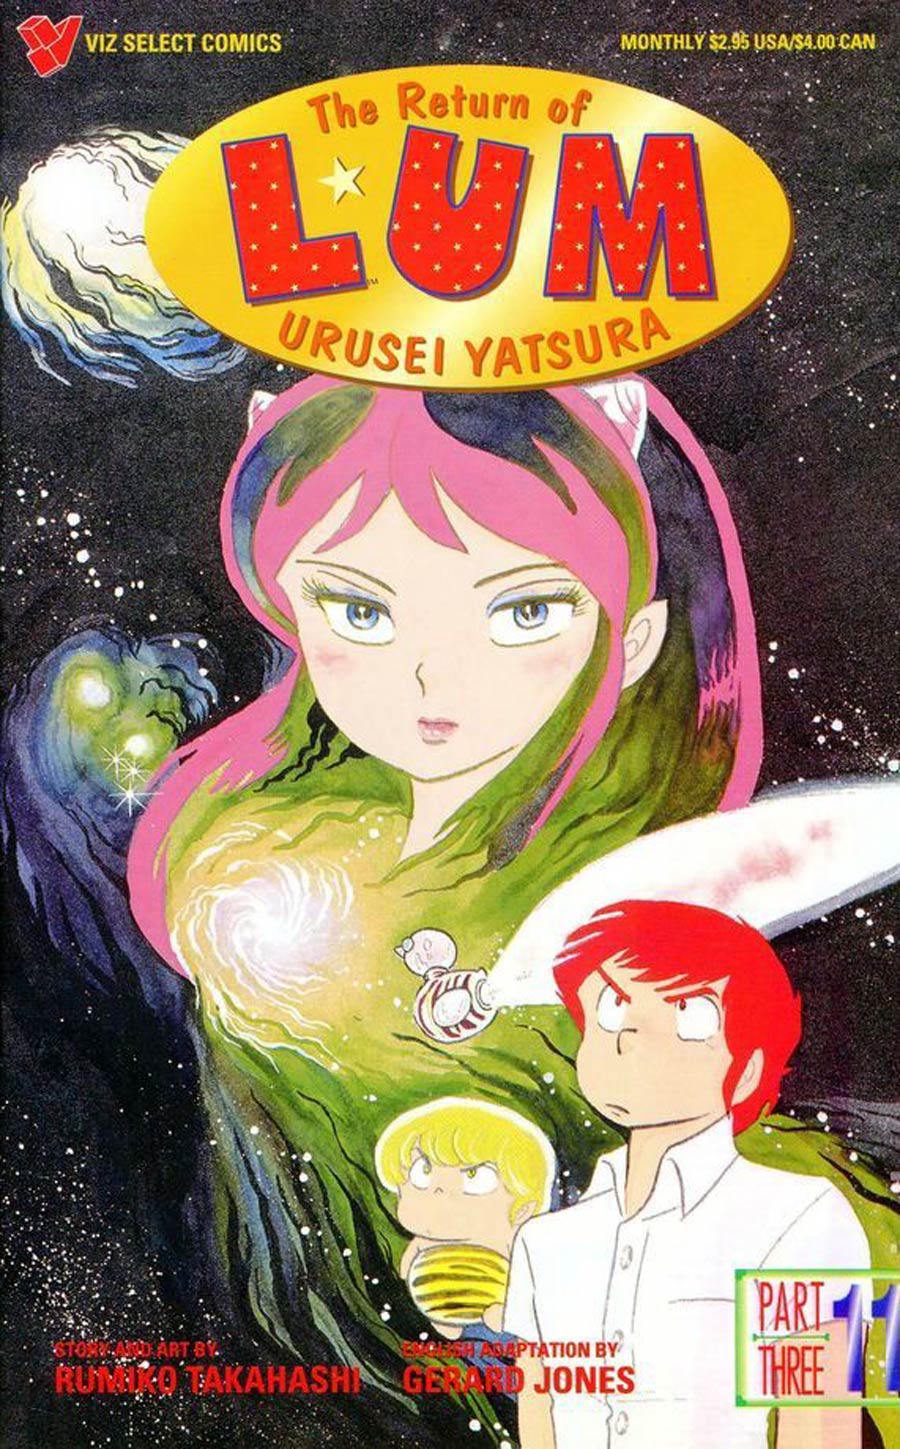 Return Of Lum Urusei Yatsura Part 3 #11